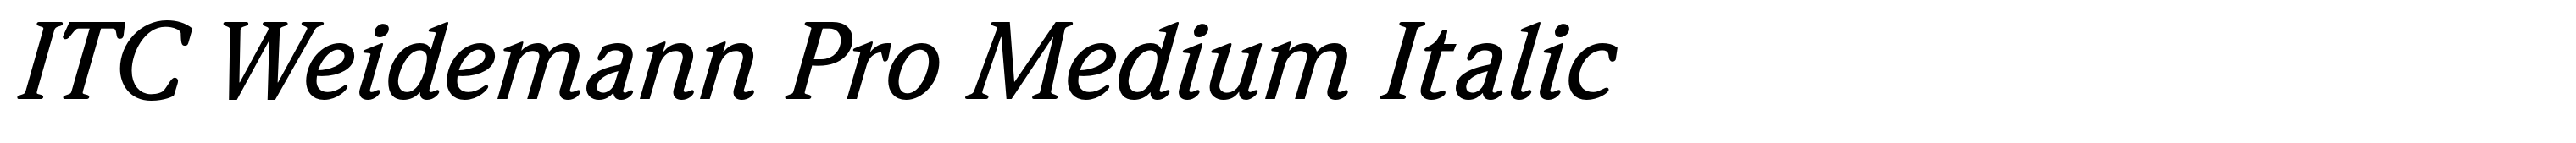 ITC Weidemann Pro Medium Italic